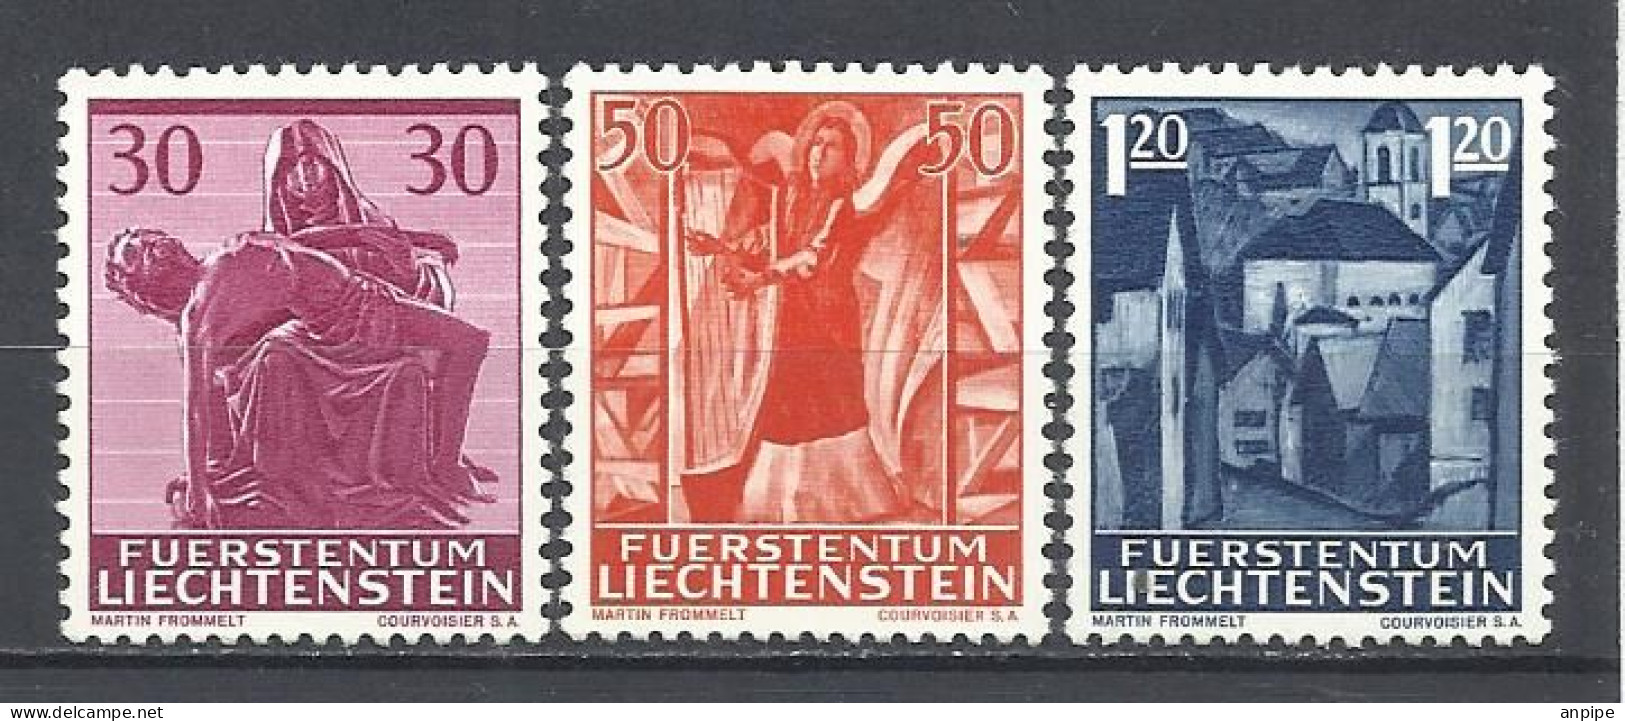 LIECHTENSTEIN, 1966 Y 1962 - Unused Stamps